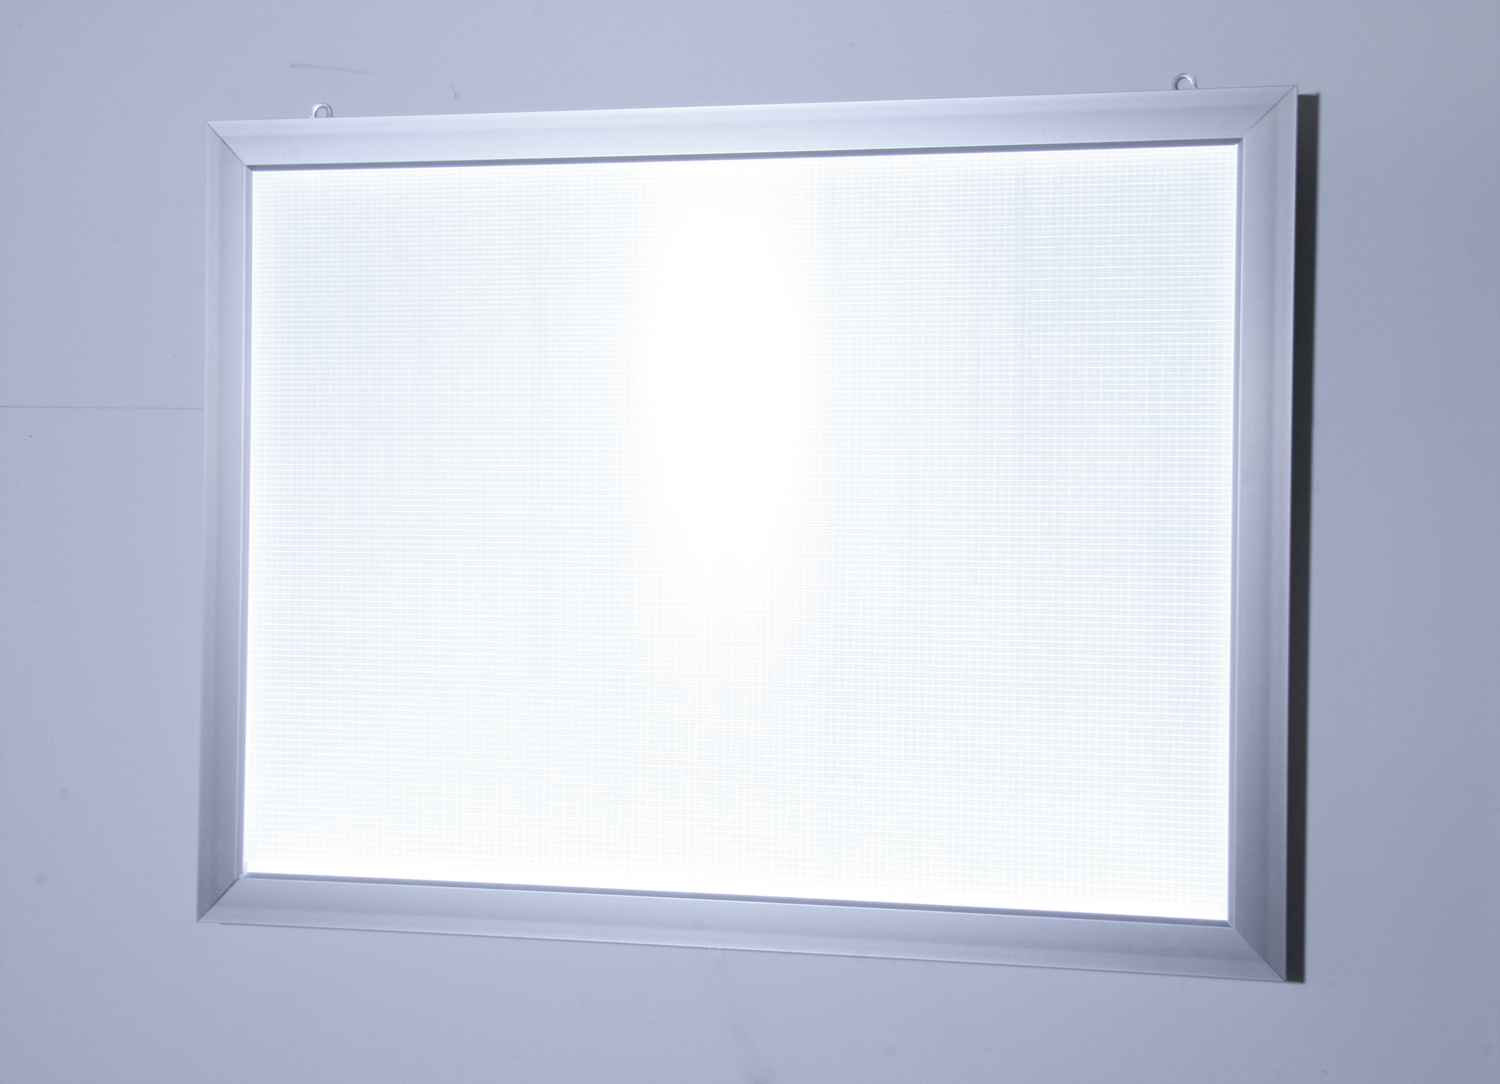 LED light box snap frame